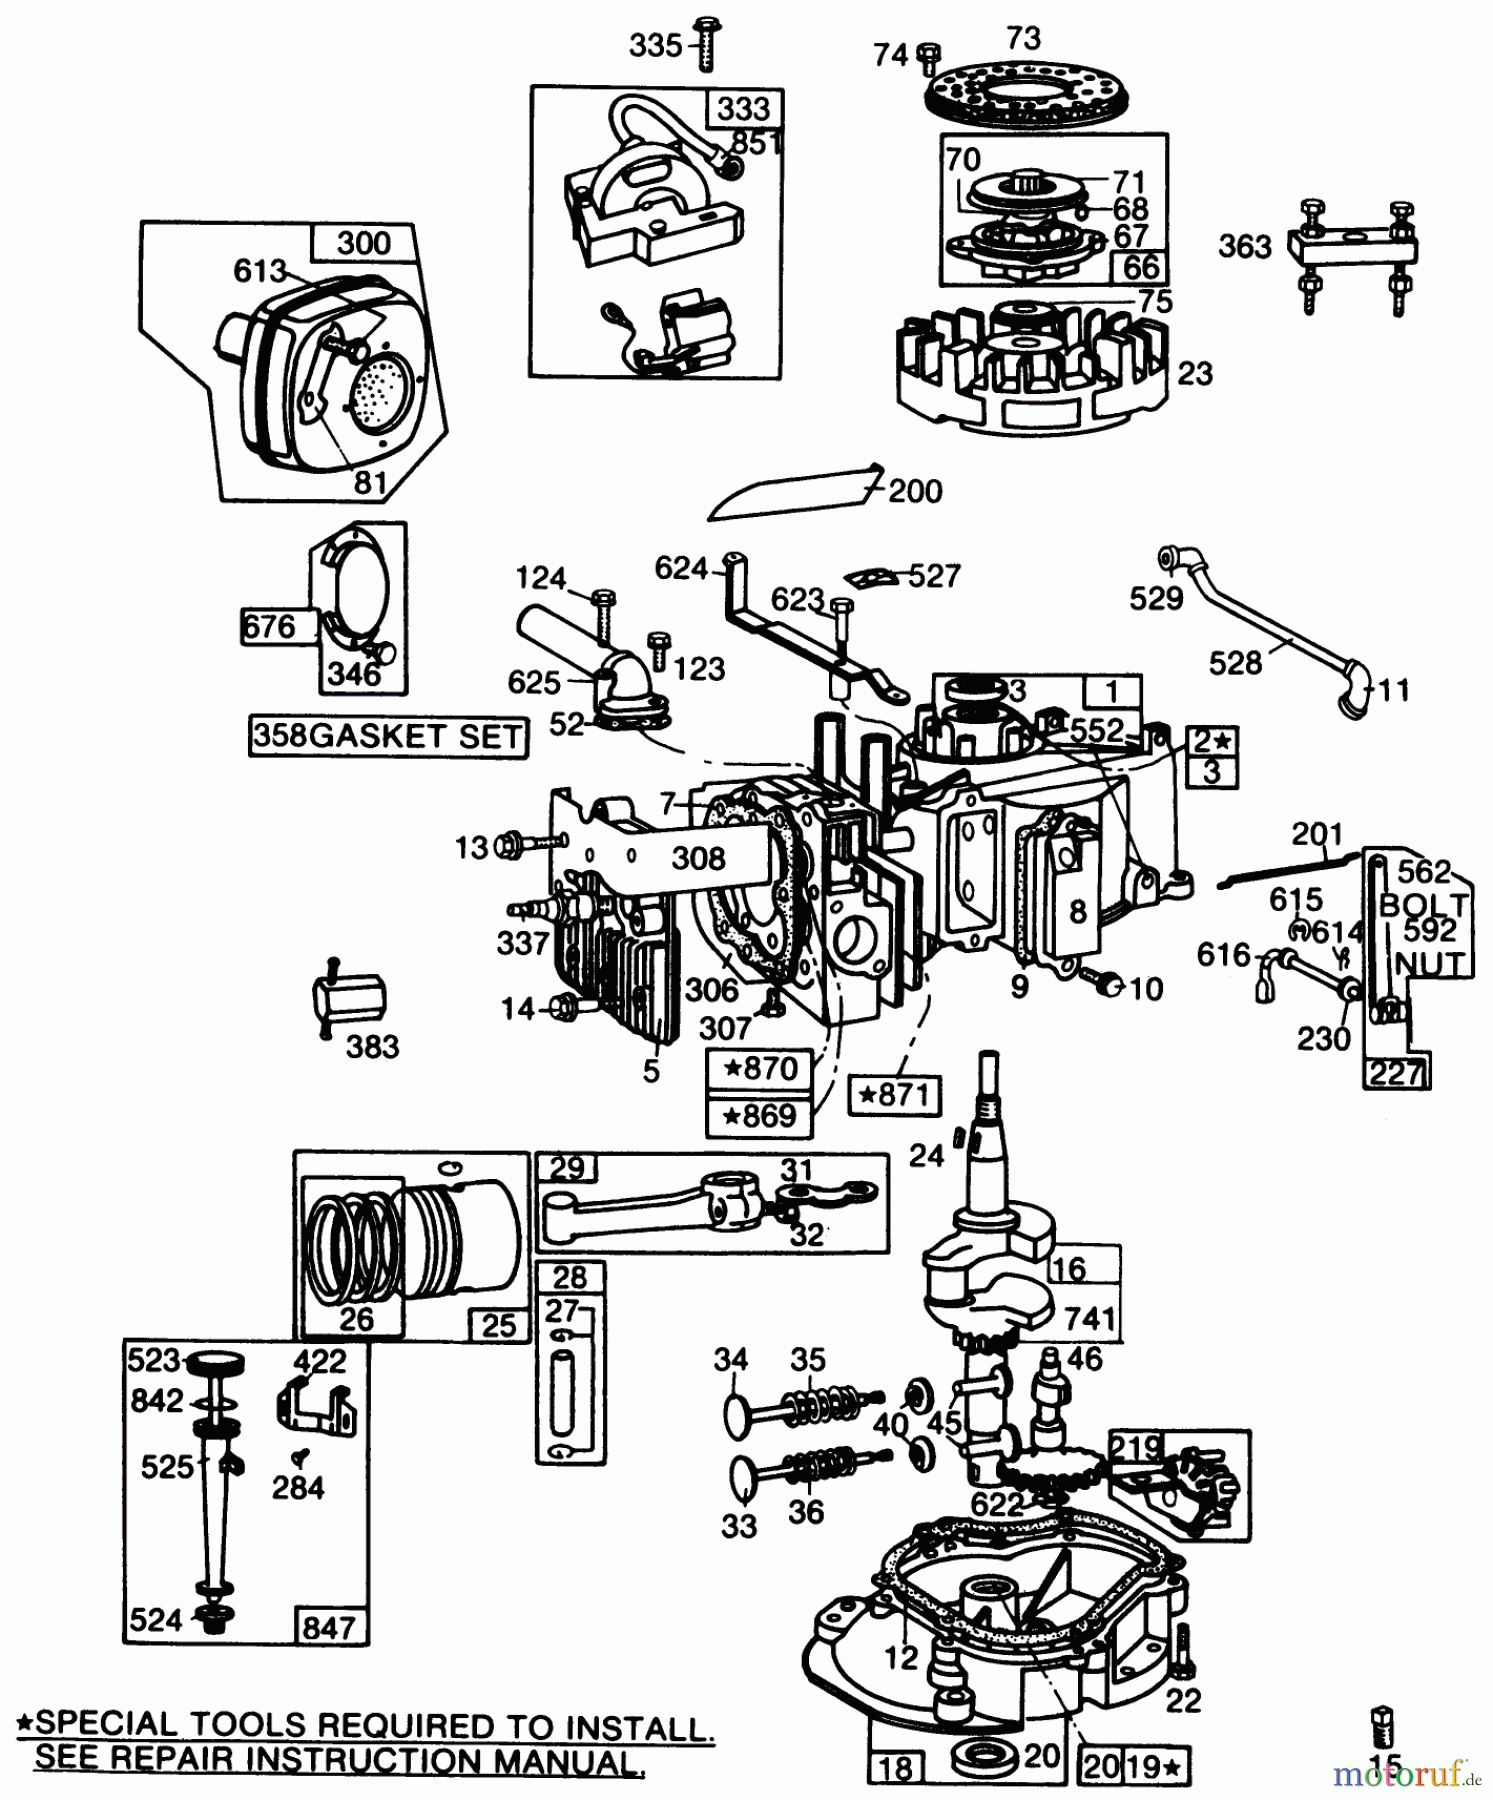  Toro Neu Mowers, Walk-Behind Seite 2 22005 - Toro Lawnmower, 1987 (7000001-7999999) ENGINE BRIGGS & STRATTON MODEL NO. 130902 TYPE 1200-01 #1